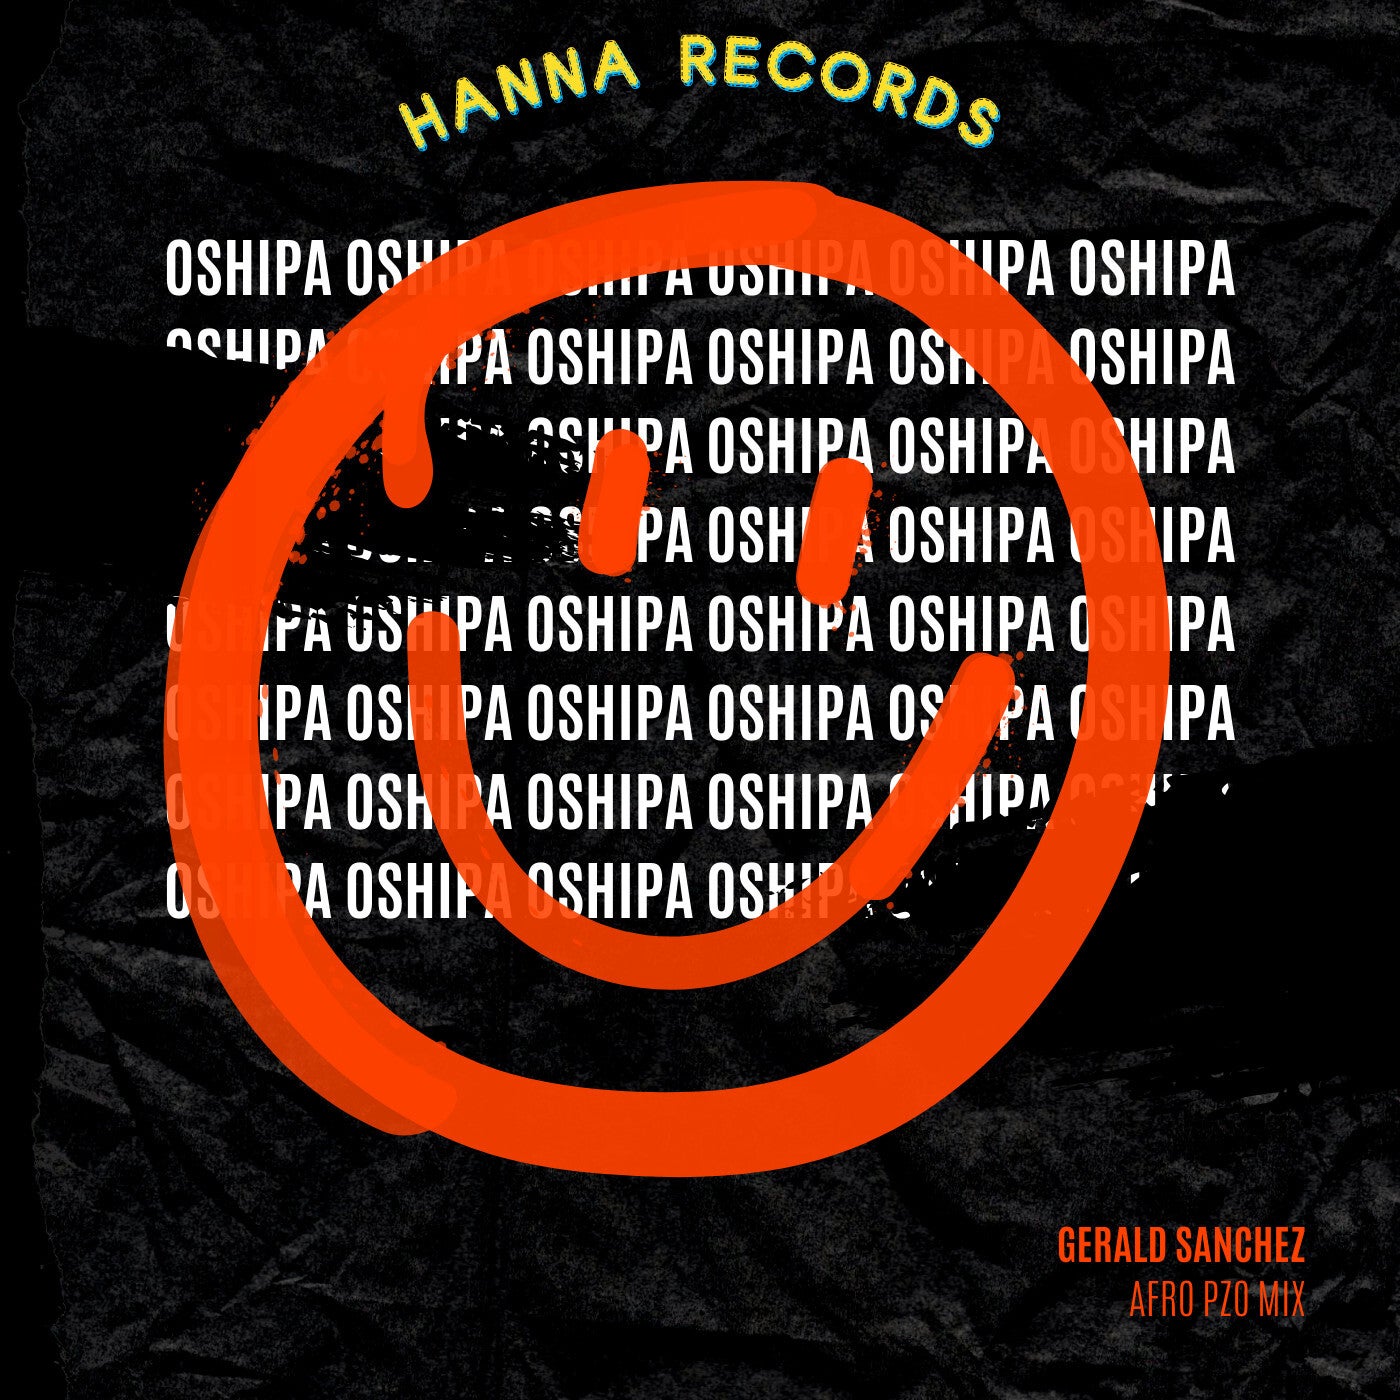 Oshipa (Afro Pzo Mix)